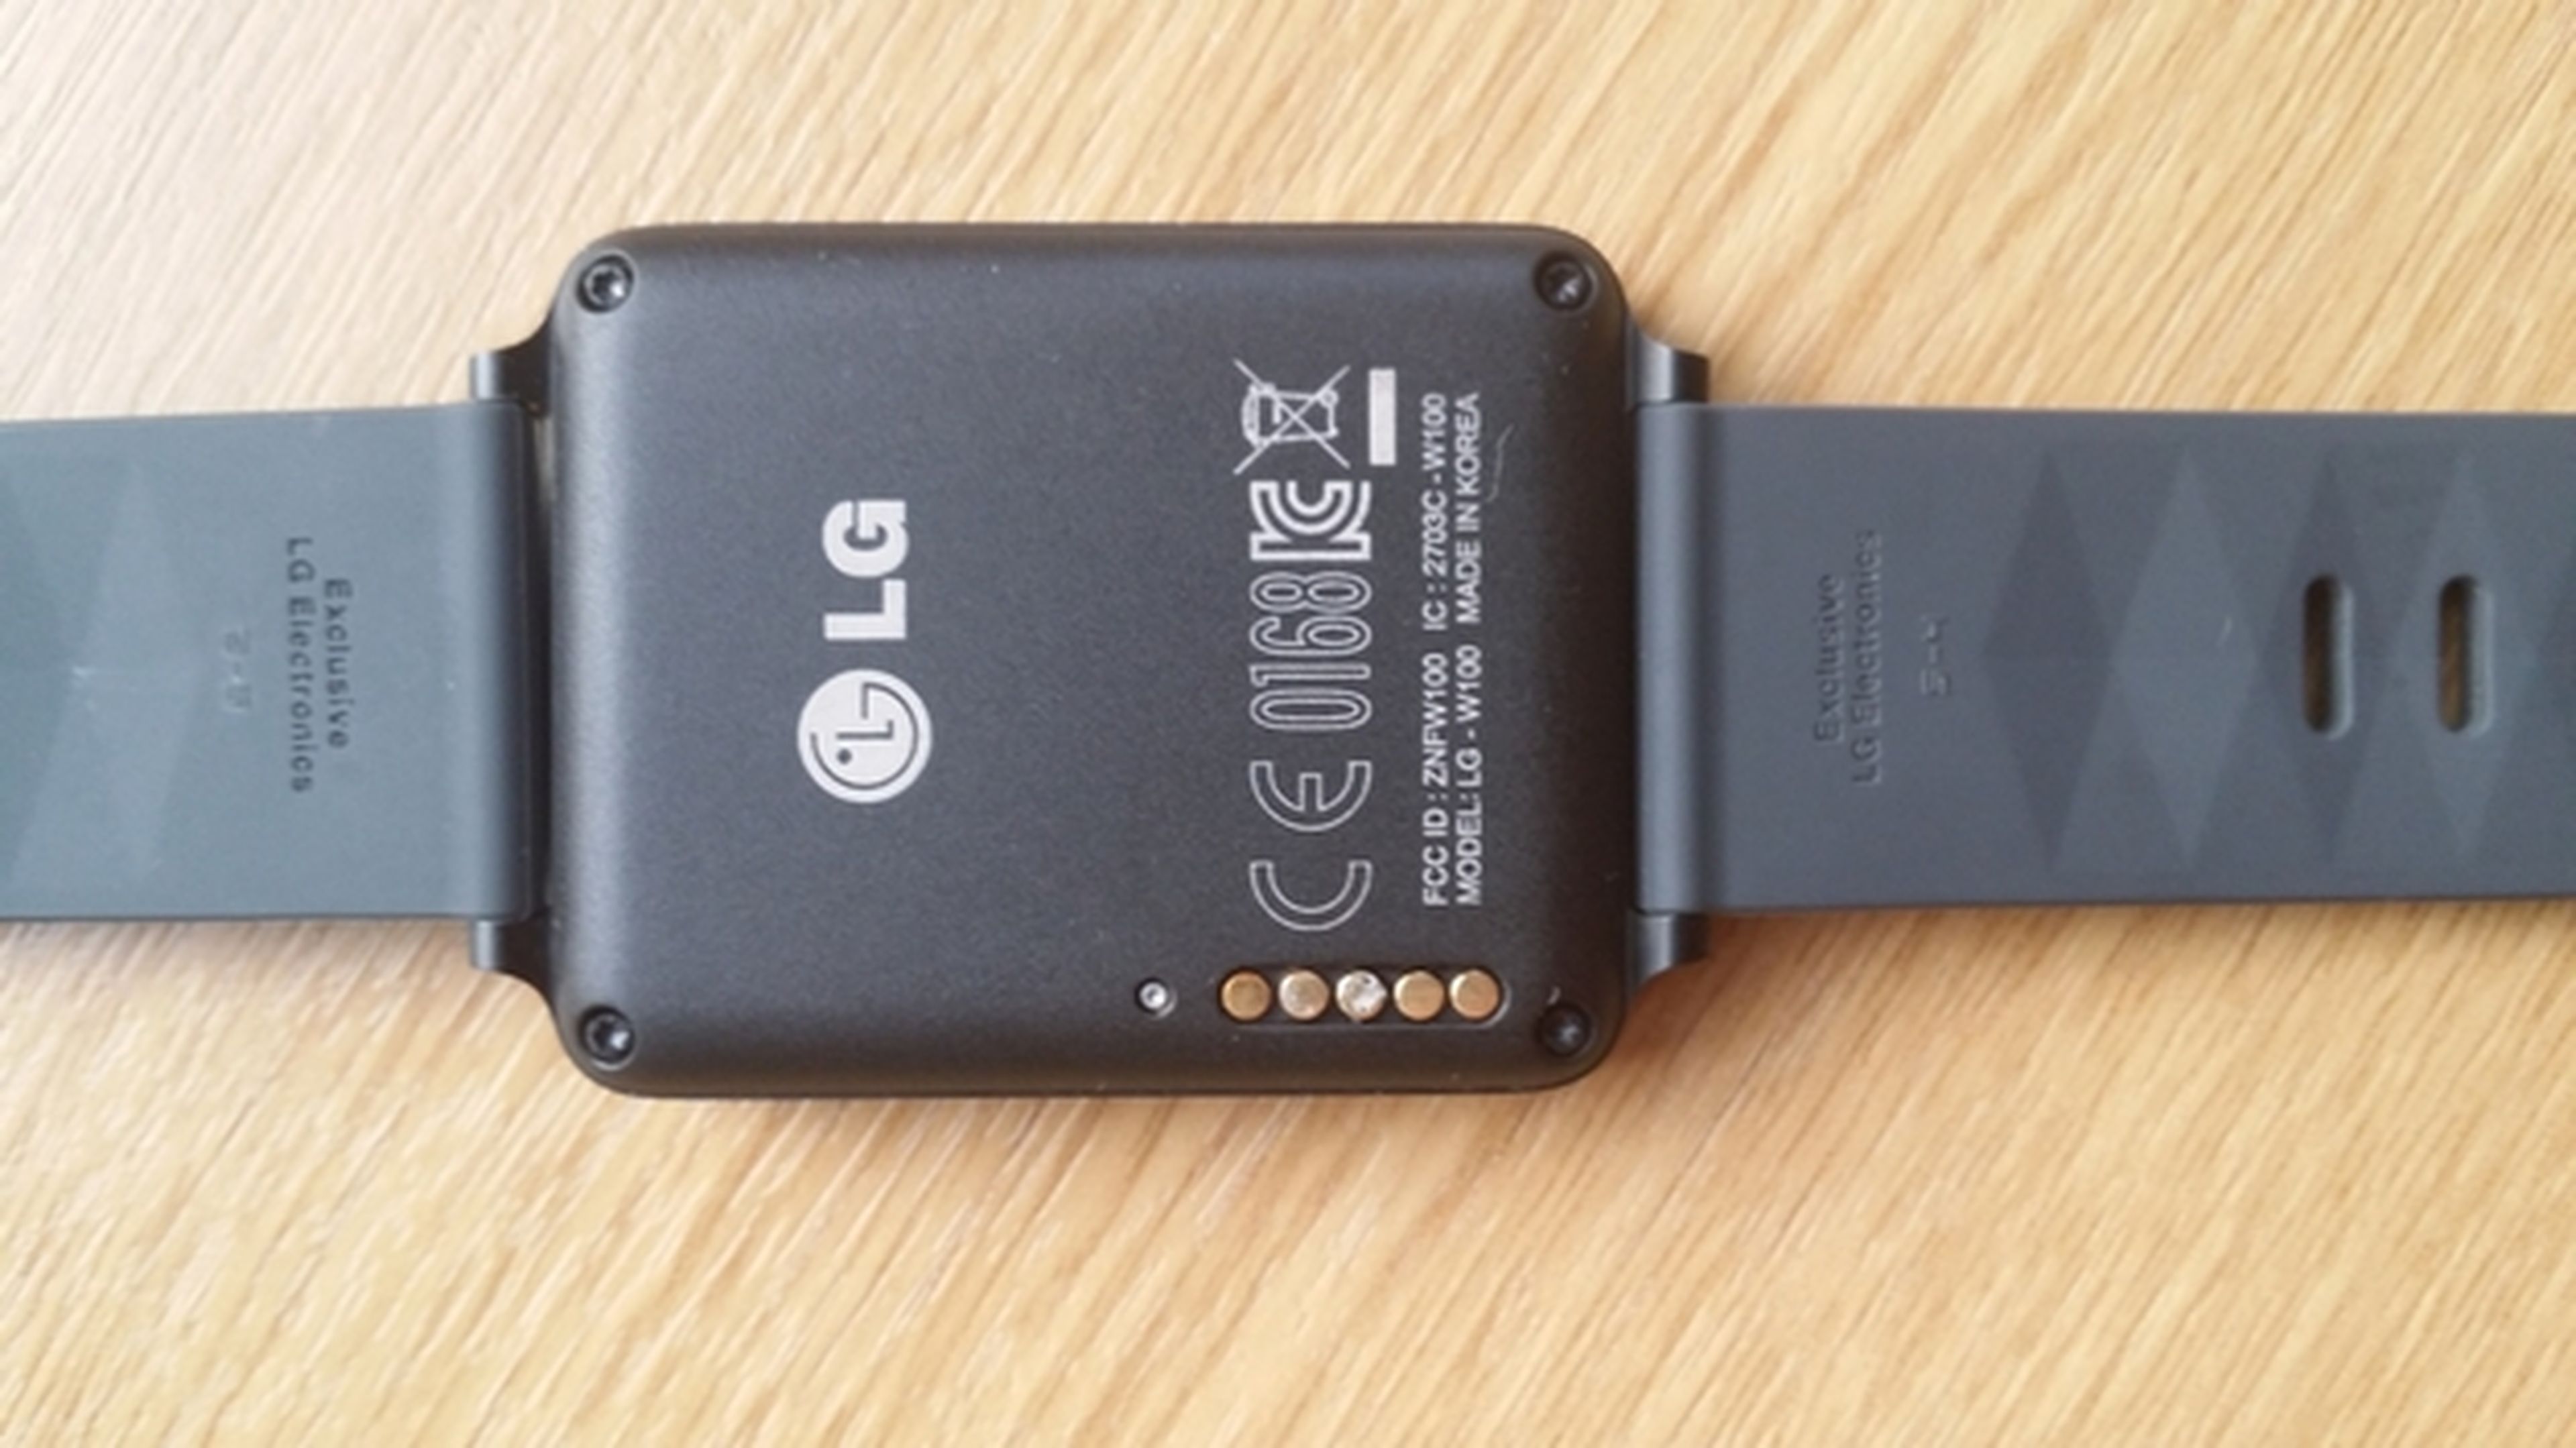 El smartwatch LG G Watch tiene un problema de corrosión en los conectores del cargador, que se corrige con una actualización.